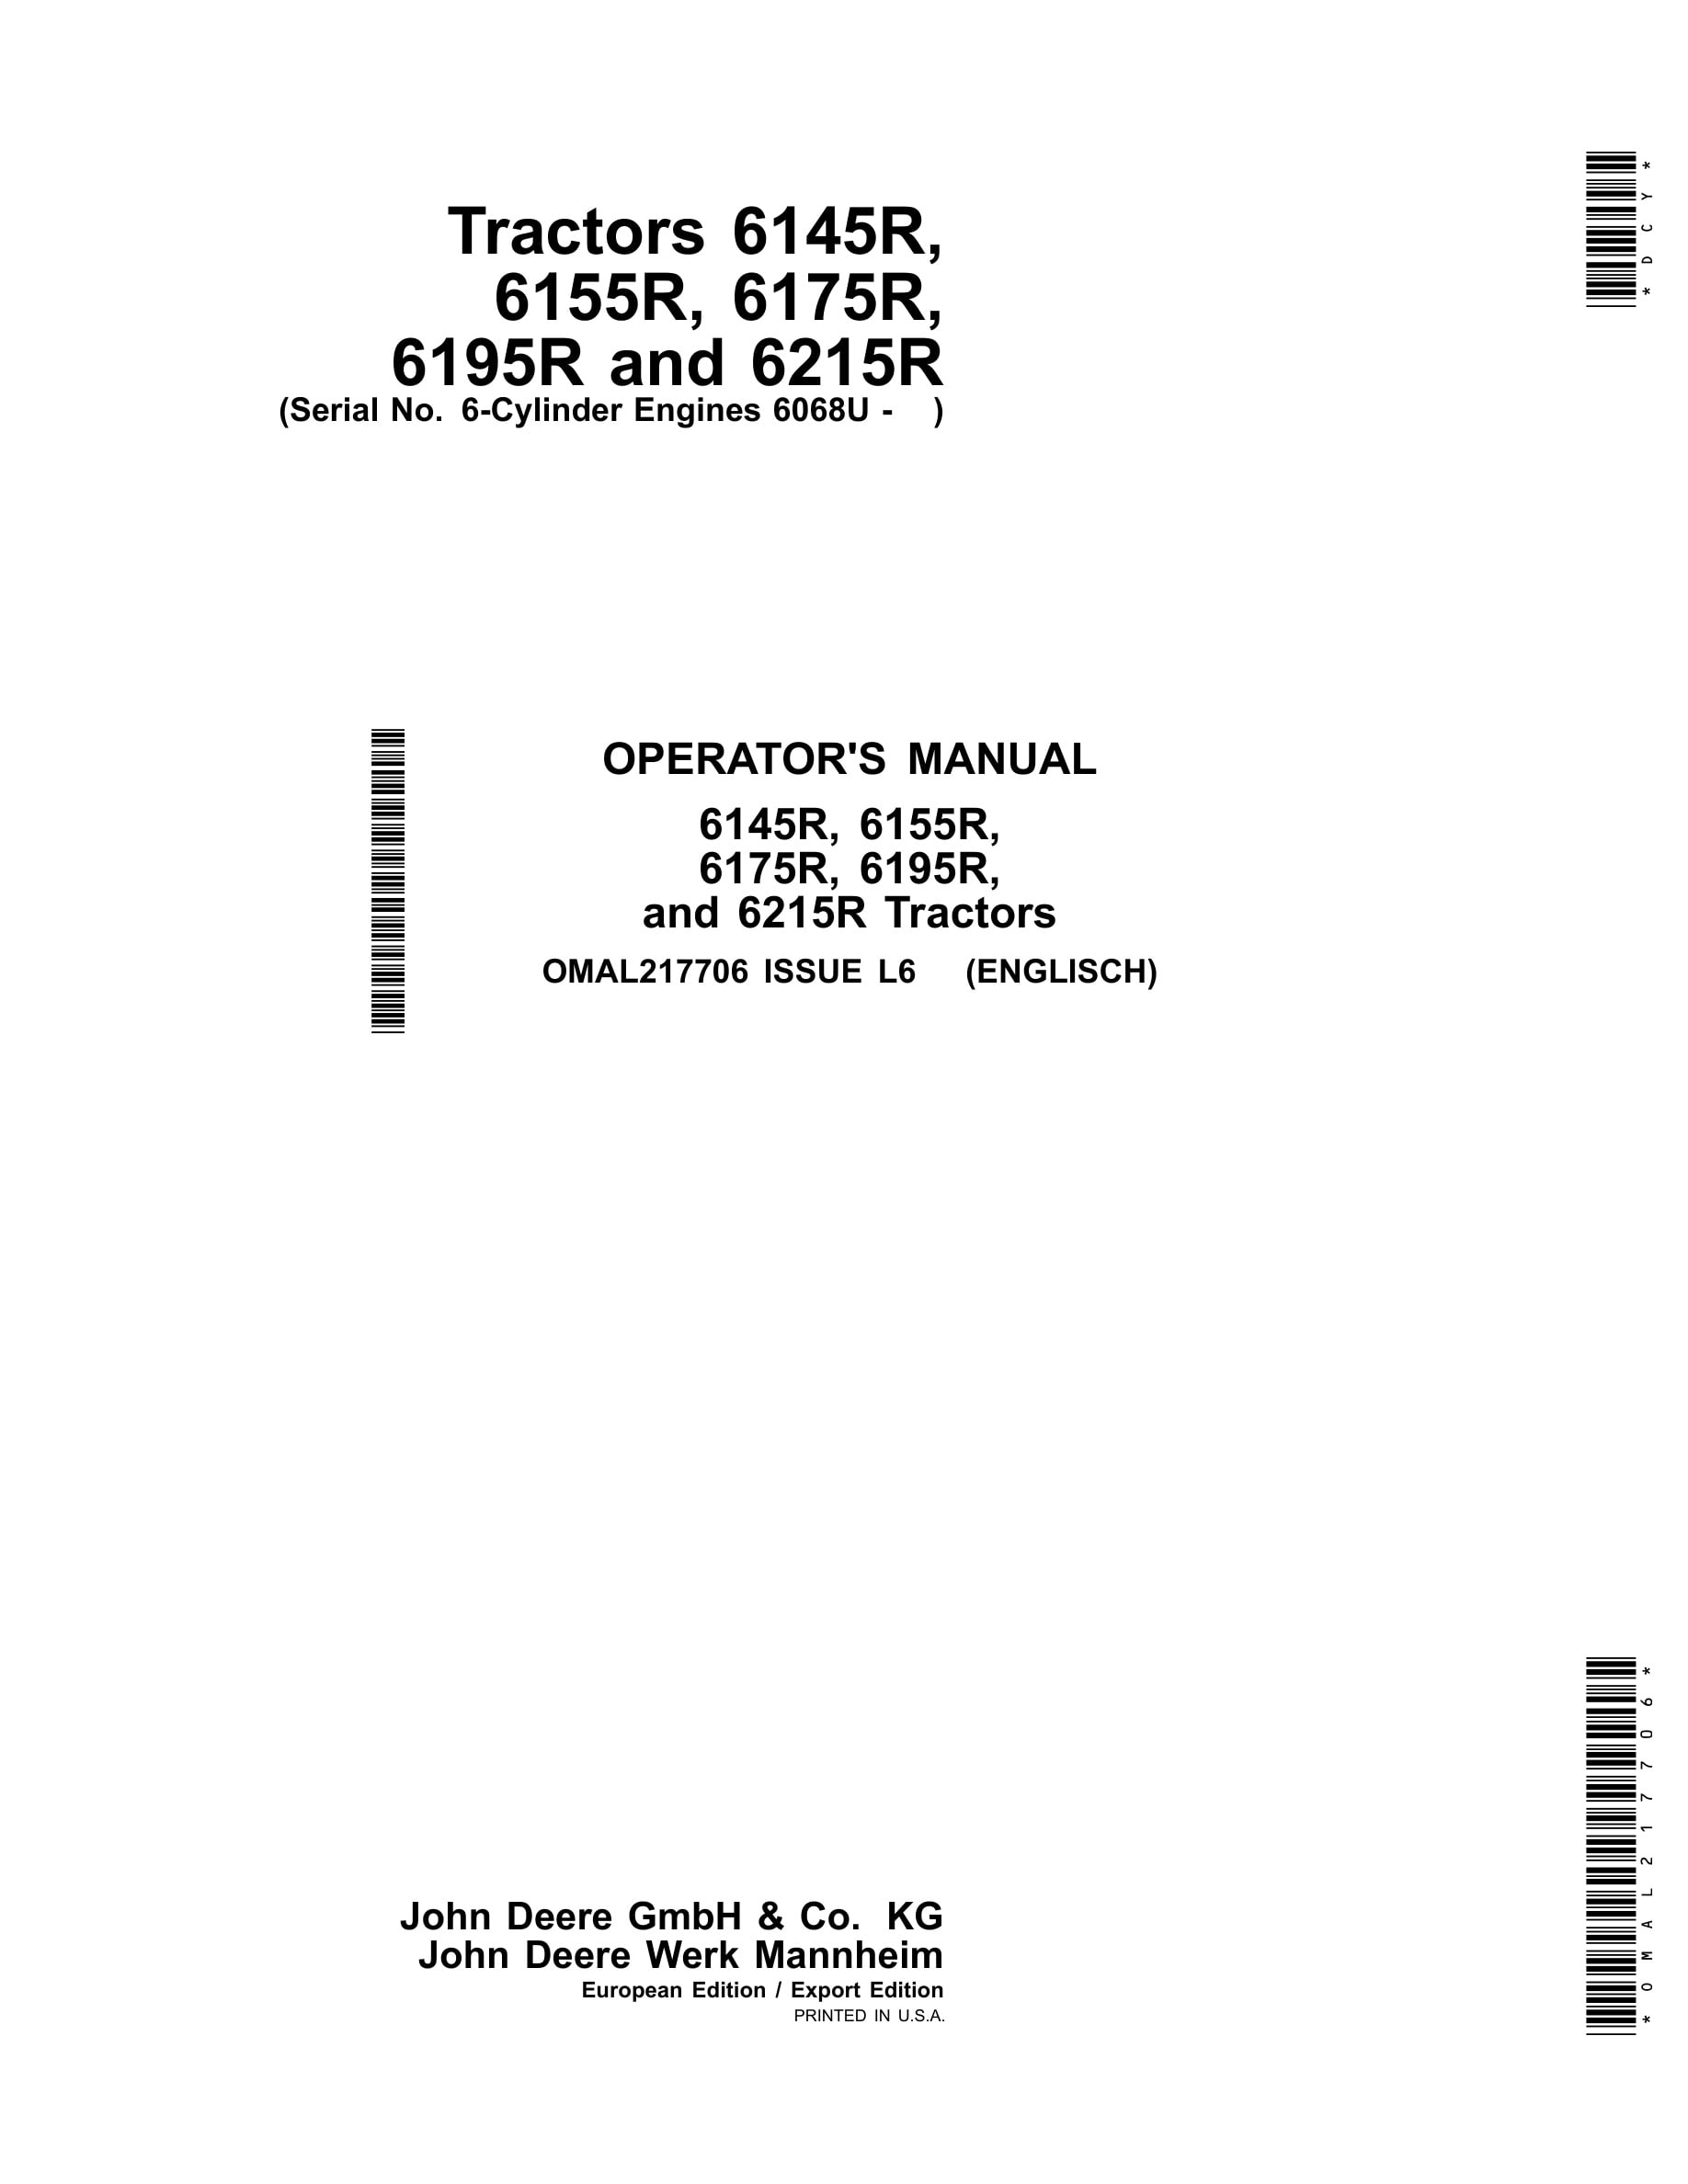 John Deere 6145r, 6155r, 6175r, 6195r, And 6215r Tractors Operator Manuals OMAL217706-1